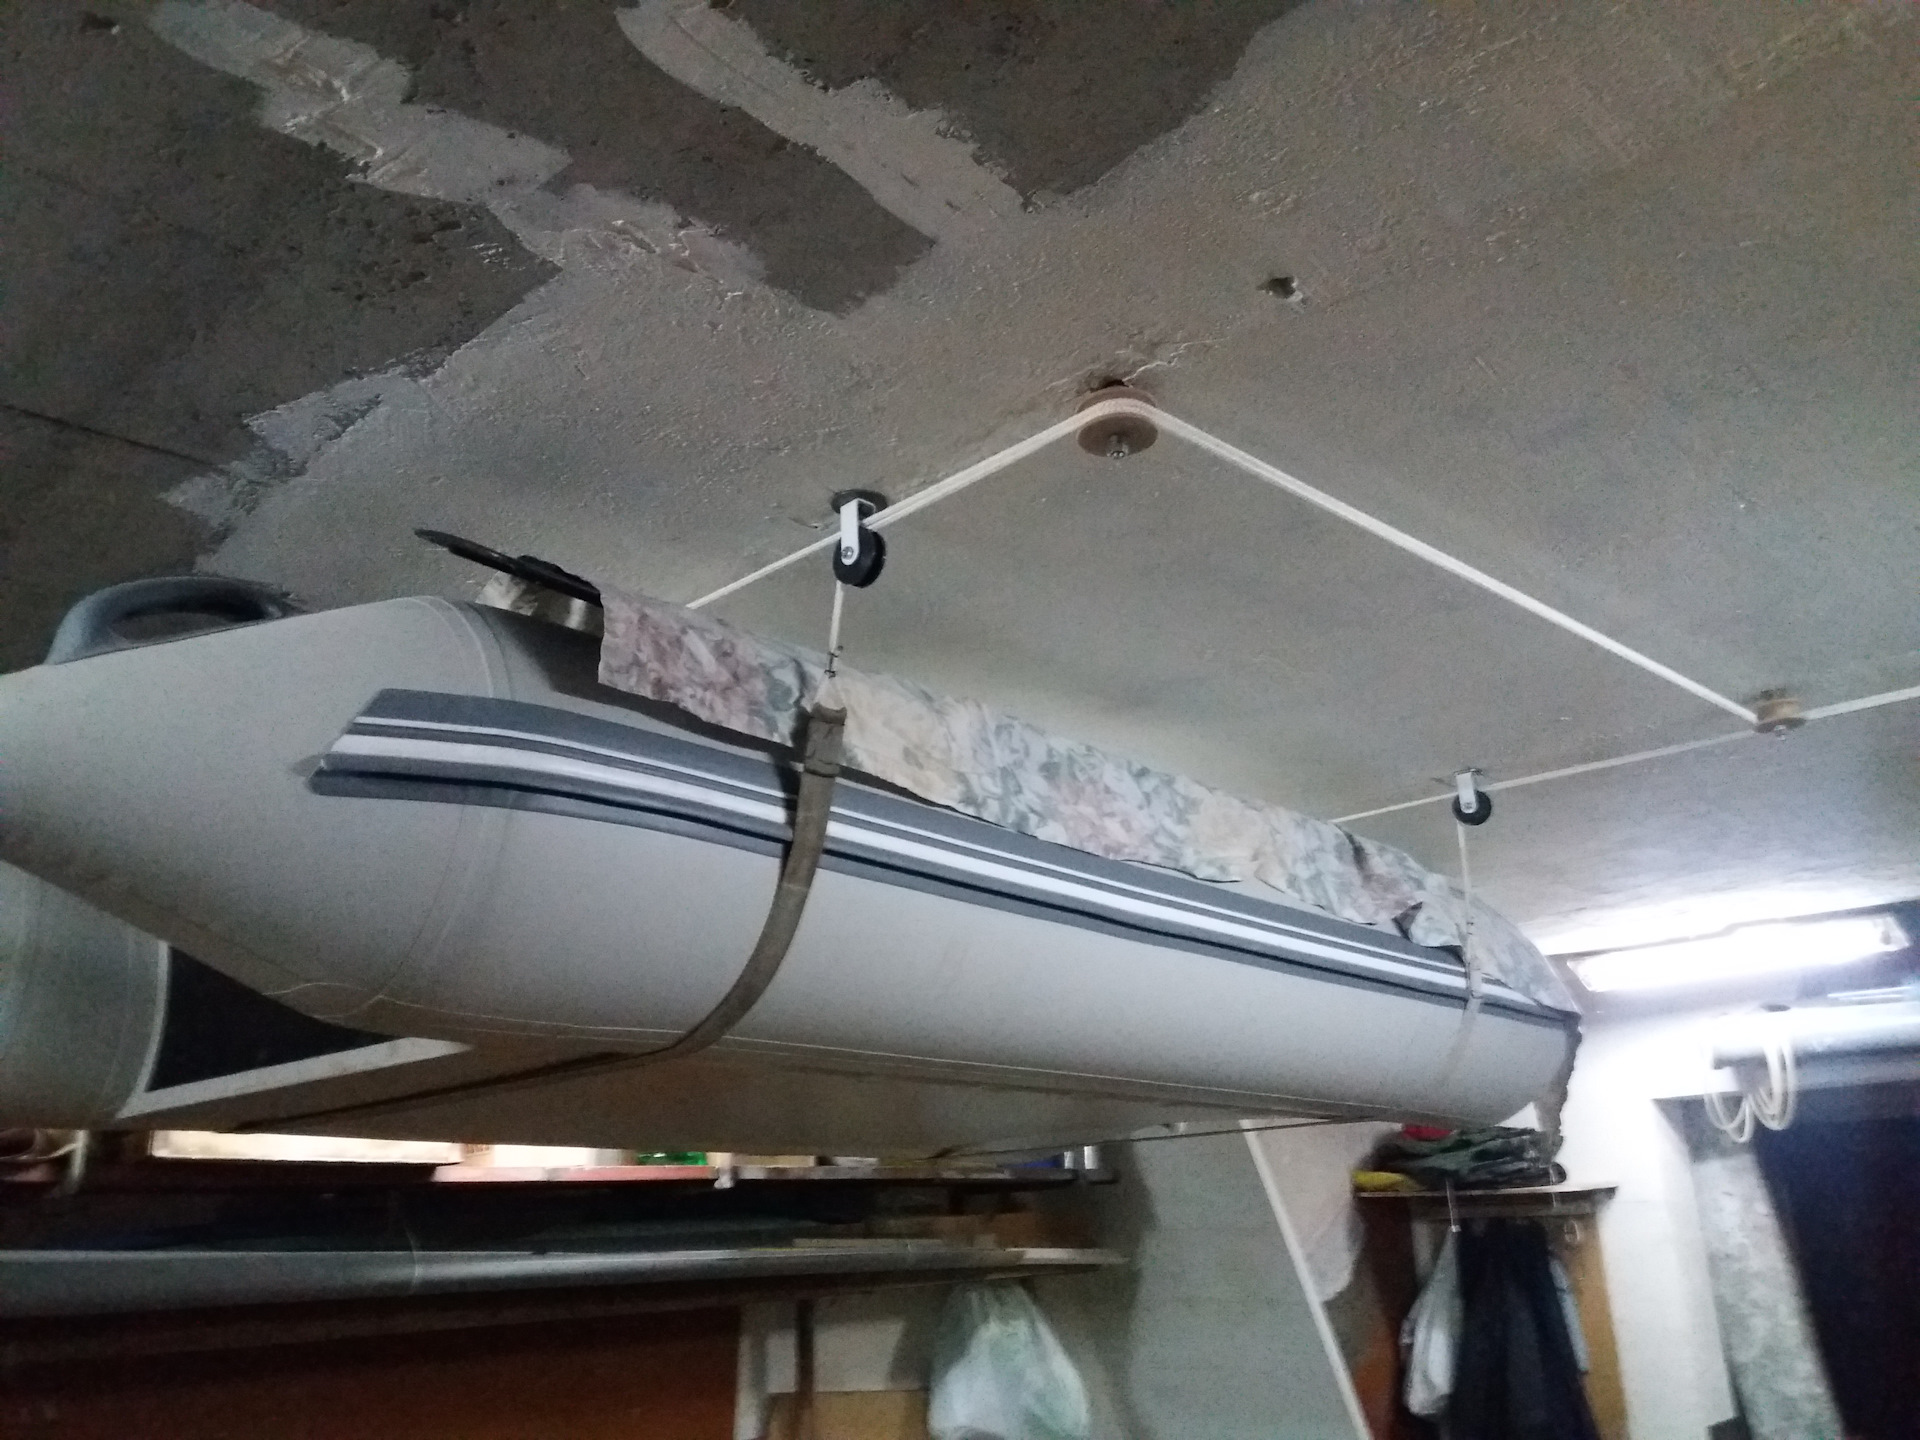 Хранение ПВХ лодки в гараже